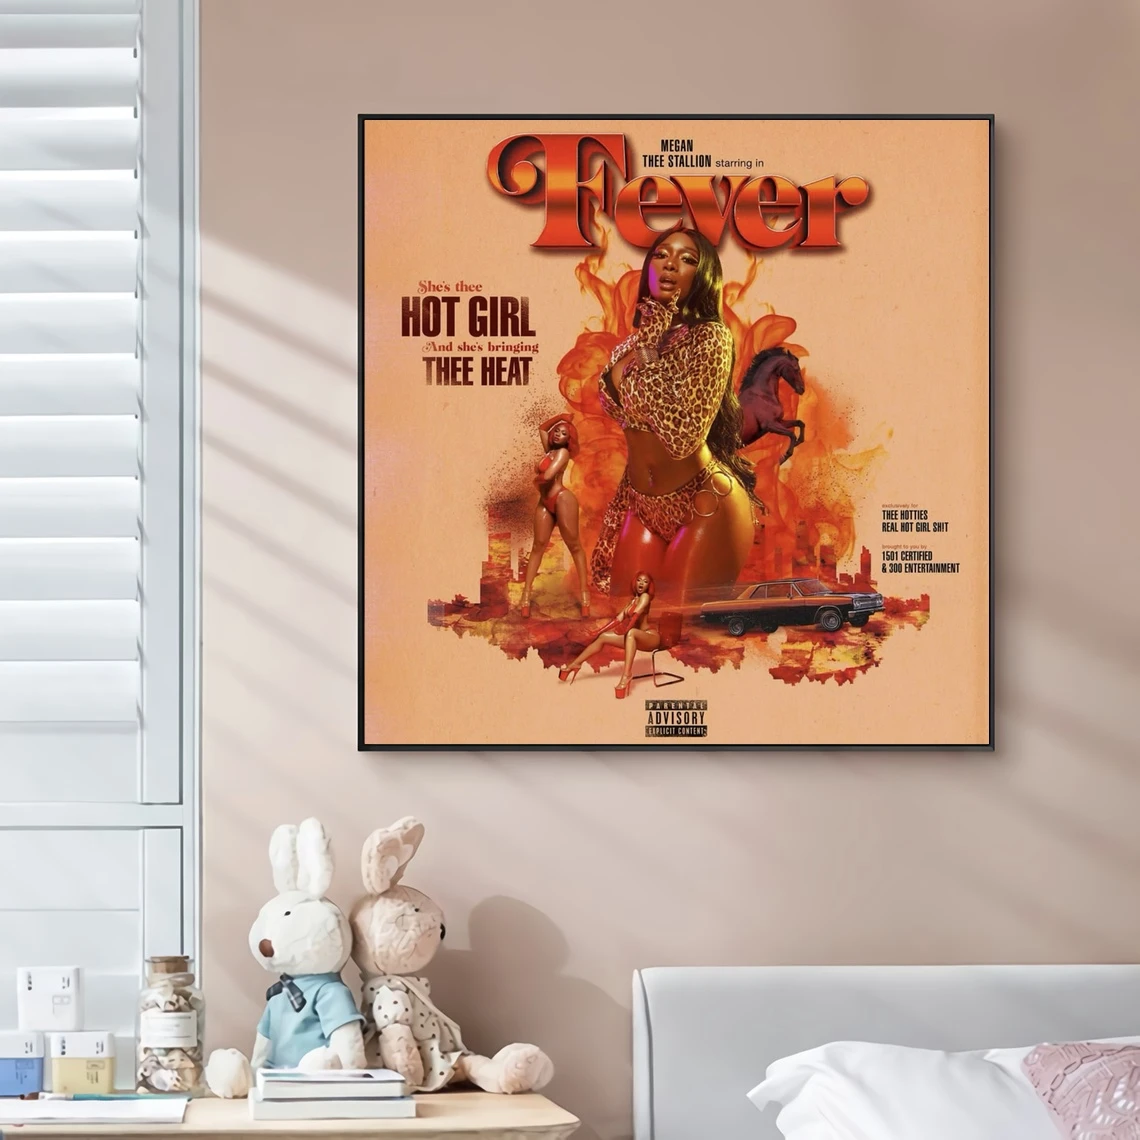 

Меган Тори, музыкальный альбом, Обложка, плакат на холсте, хип-хоп, рэпер, поп-музыка, знаменитости, настенная живопись, художественное украшение